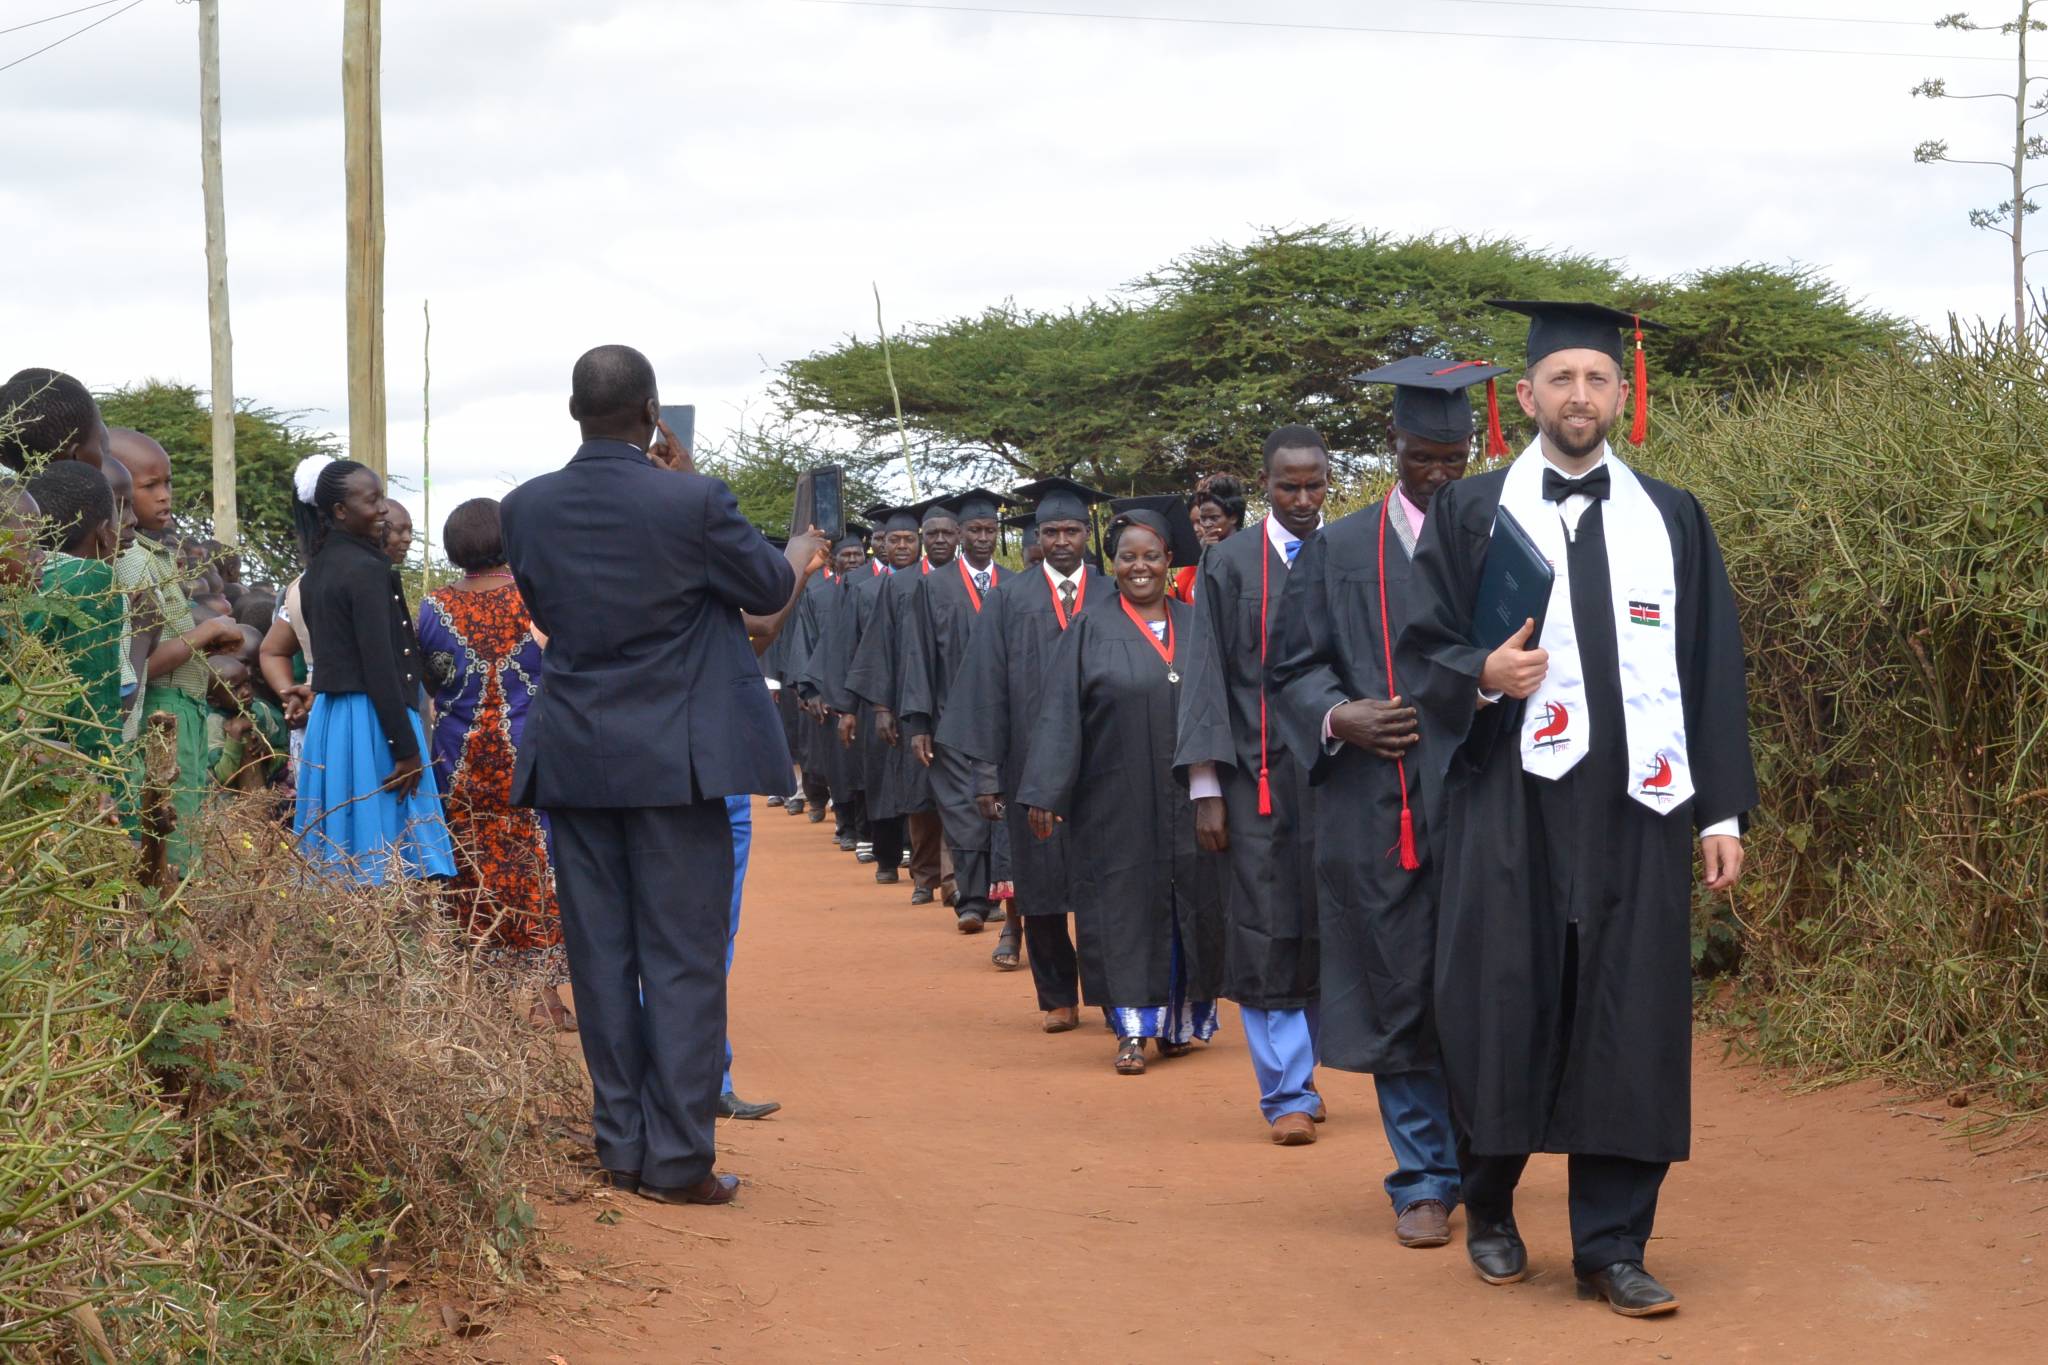 Graduates at EABC Graduation